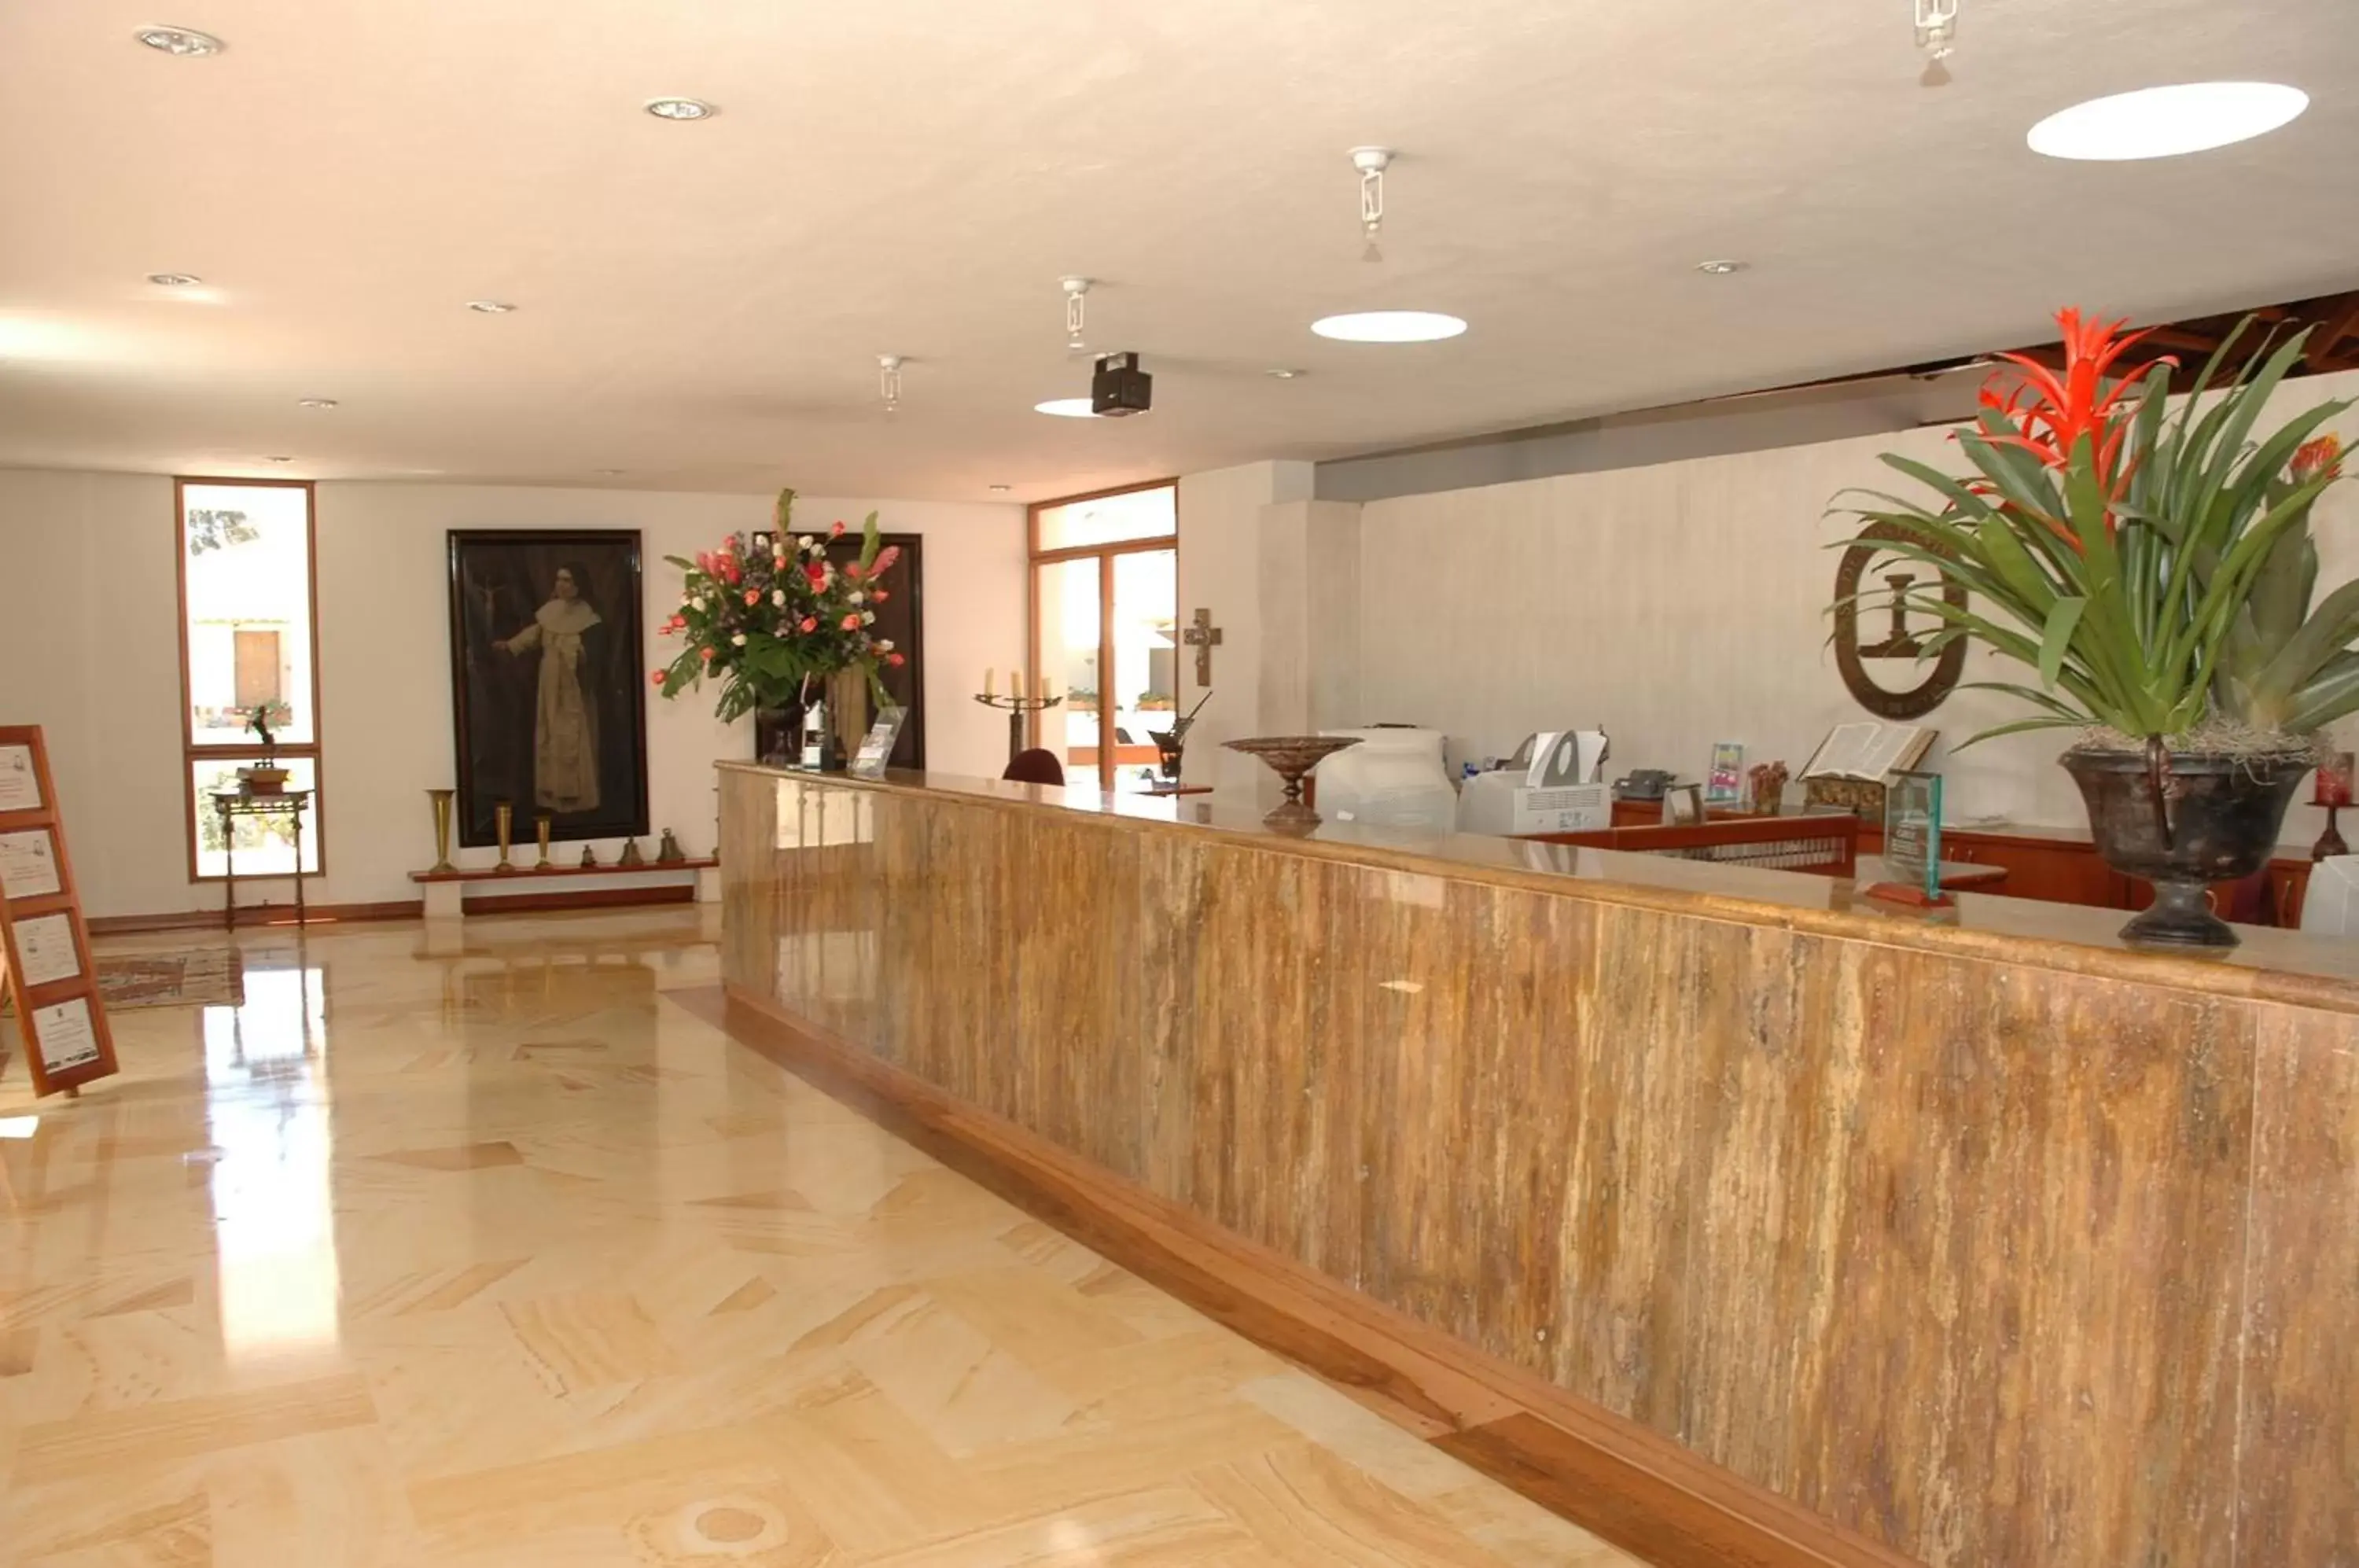 Lobby or reception in Hotel Casa de los Fundadores